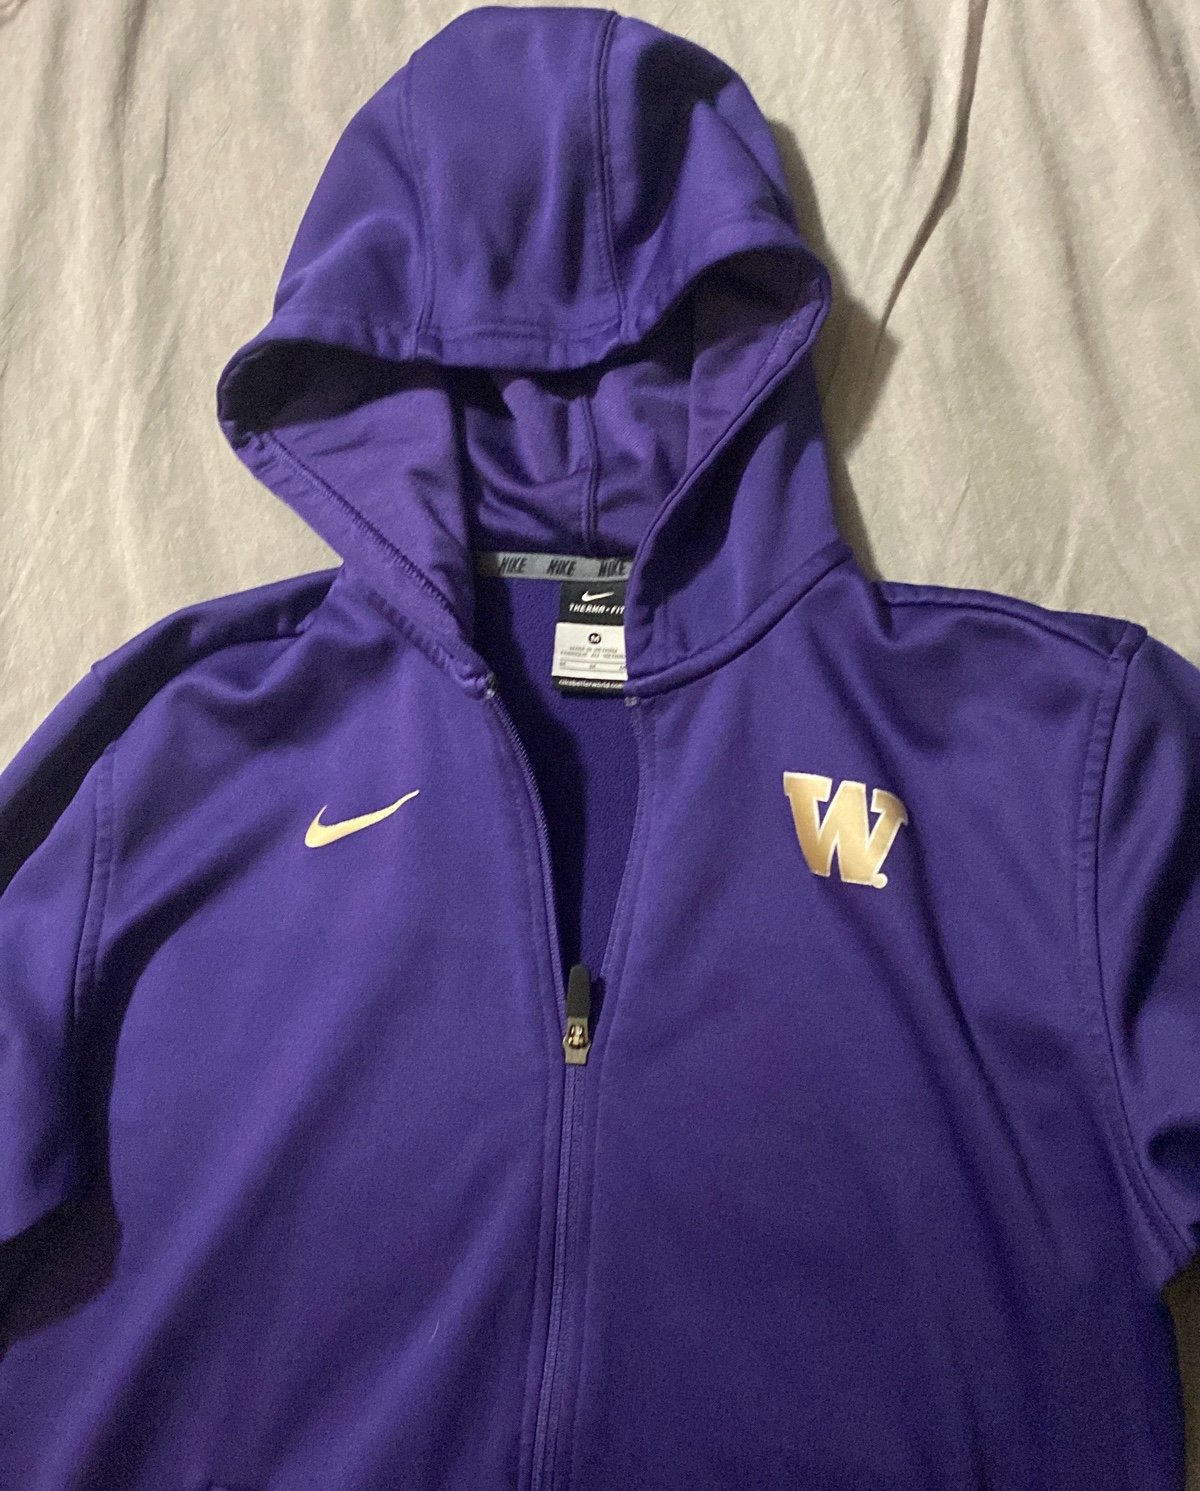 Nike University Of Washington Hooded Zippered Jacket Me